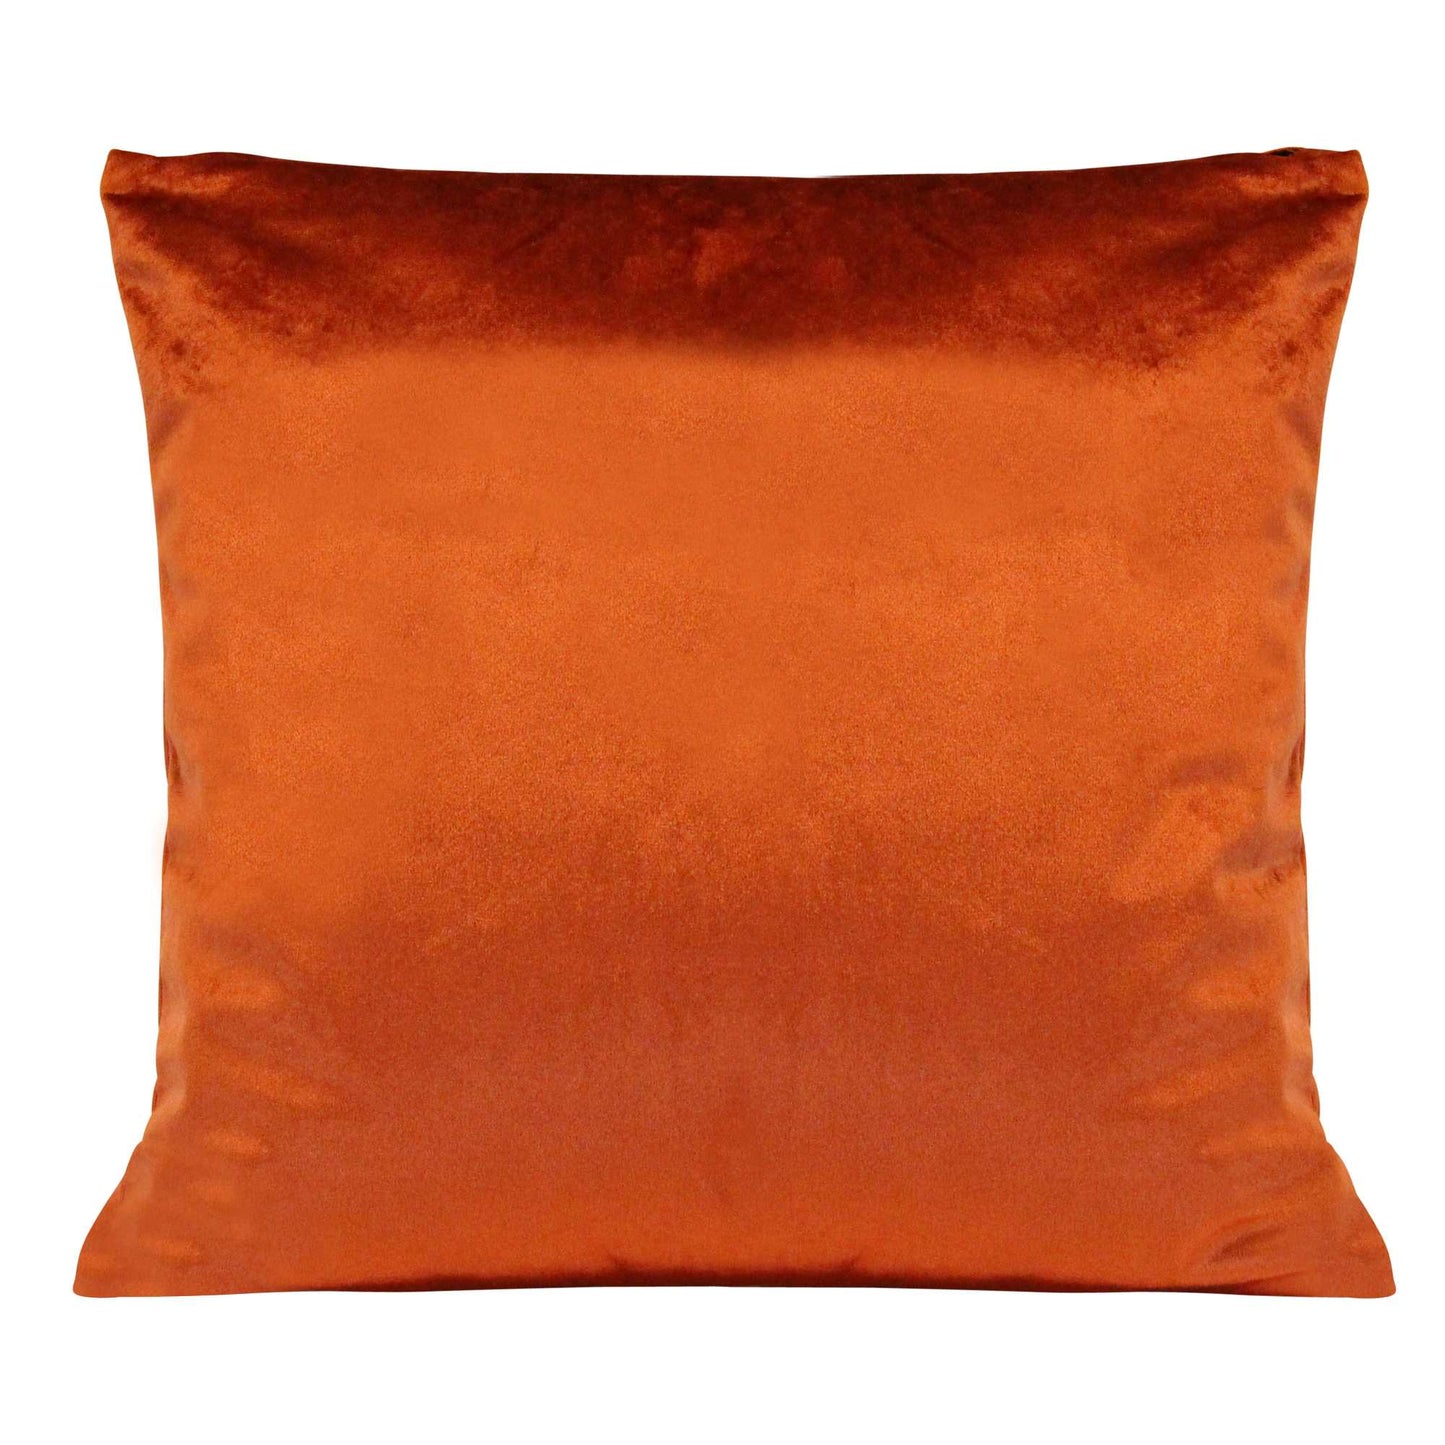 Burnt Orange Textured Velvet Square Pillow